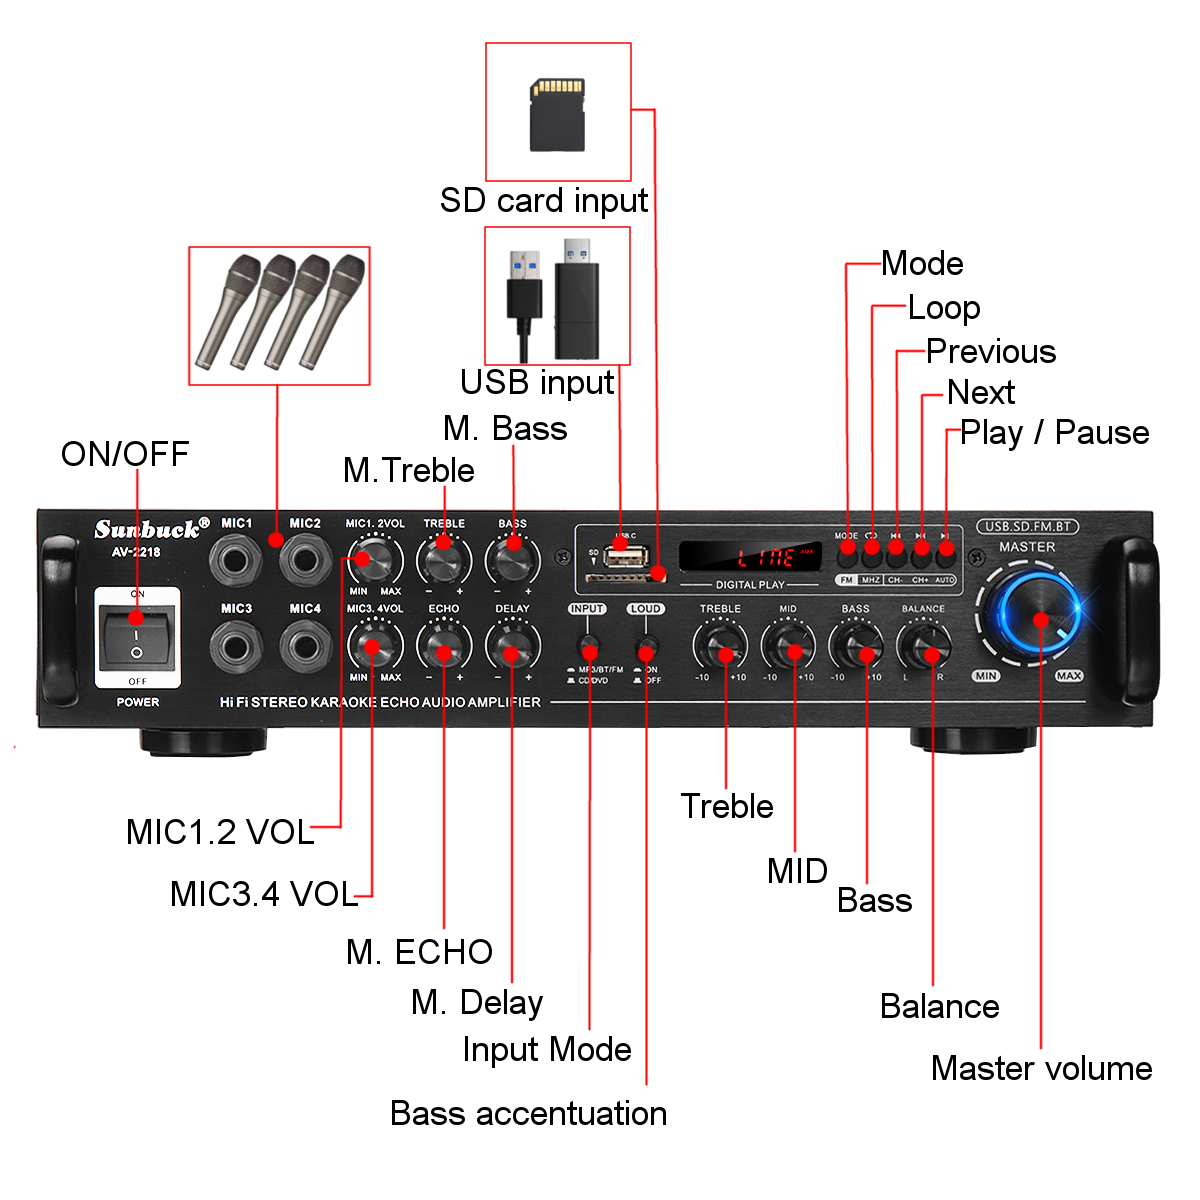 Sunbuck AV-2218 Audio Power Amplifier AC 110V 220V DC12V Bluetooth Karaoke Amplifier HIFI Home Theater Amplifier for Car Home